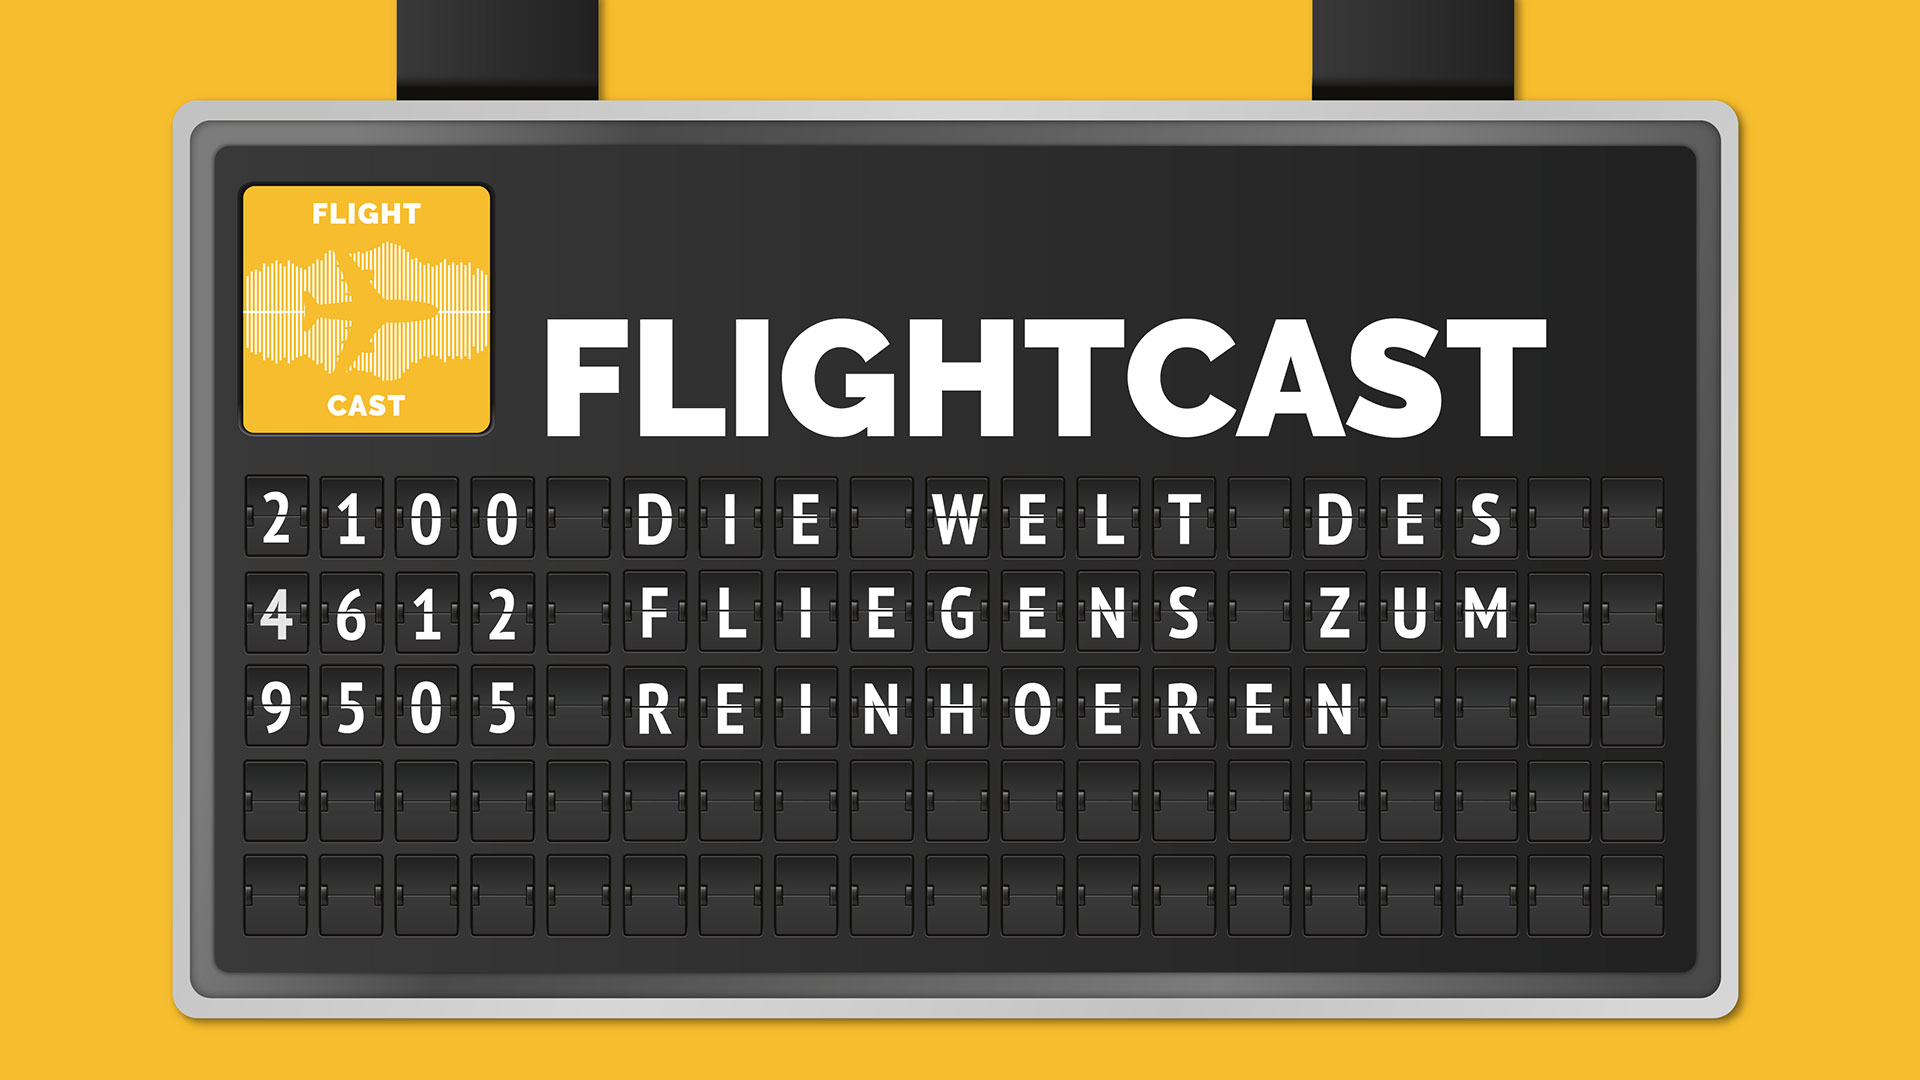 flightcast_header_1920x1080